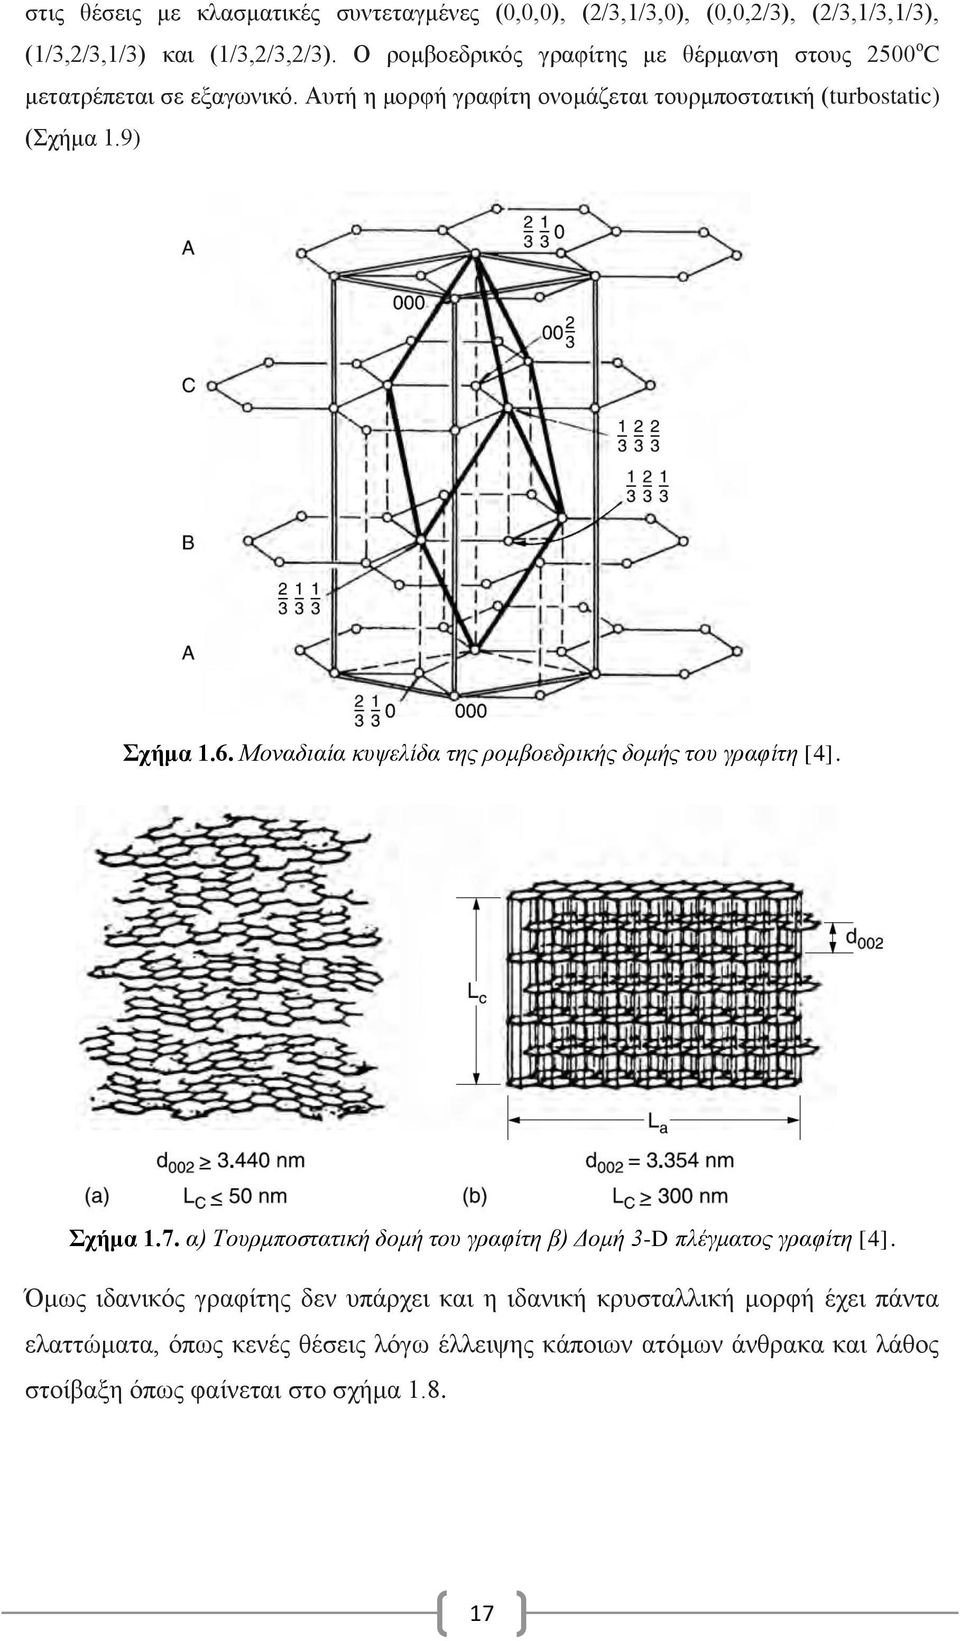 9) Σχήμα 1.6. Μοναδιαία κυψελίδα της ρομβοεδρικής δομής του γραφίτη [4]. Σχήμα 1.7. α) Τουρμποστατική δομή του γραφίτη β) Δομή 3-D πλέγματος γραφίτη [4].